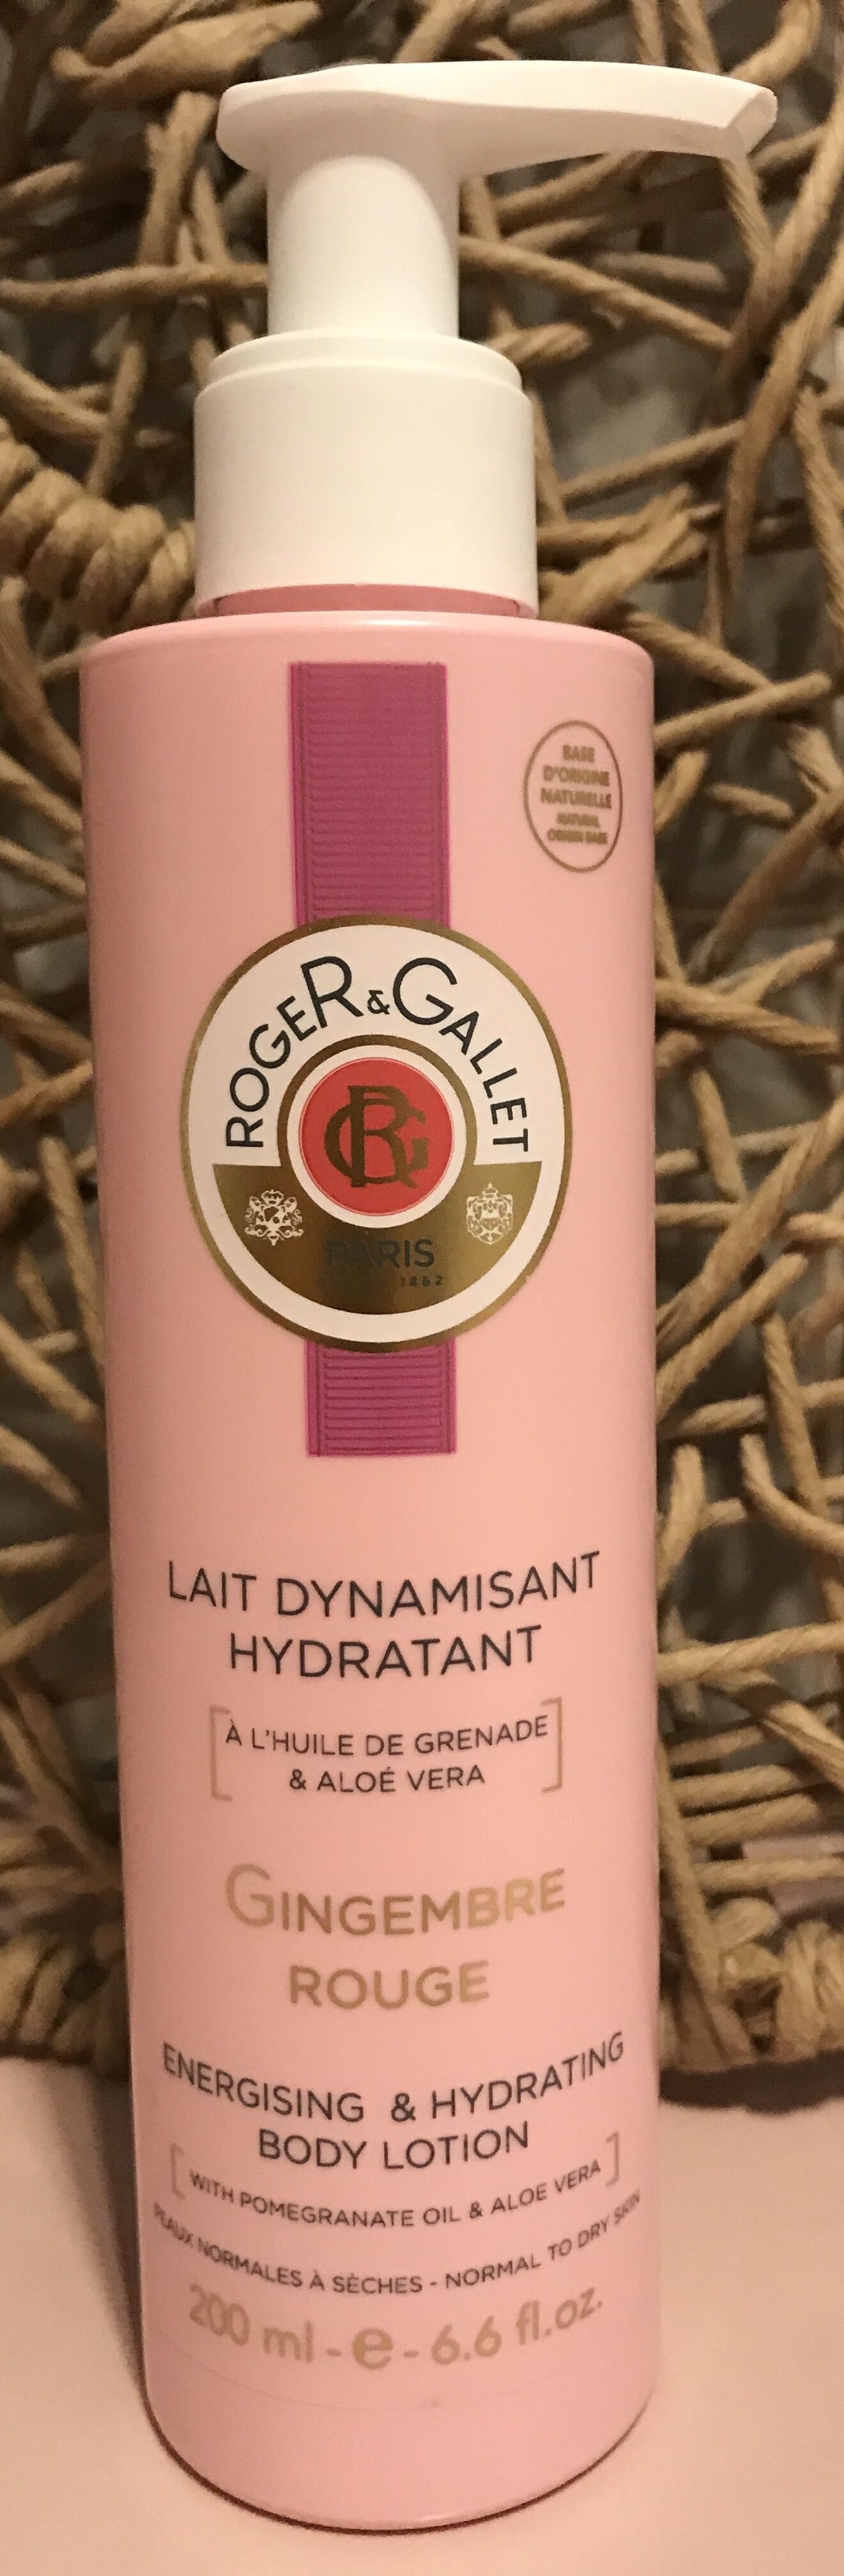 Lait dynamisant hydratant Gingembre Rouge - Produit - fr